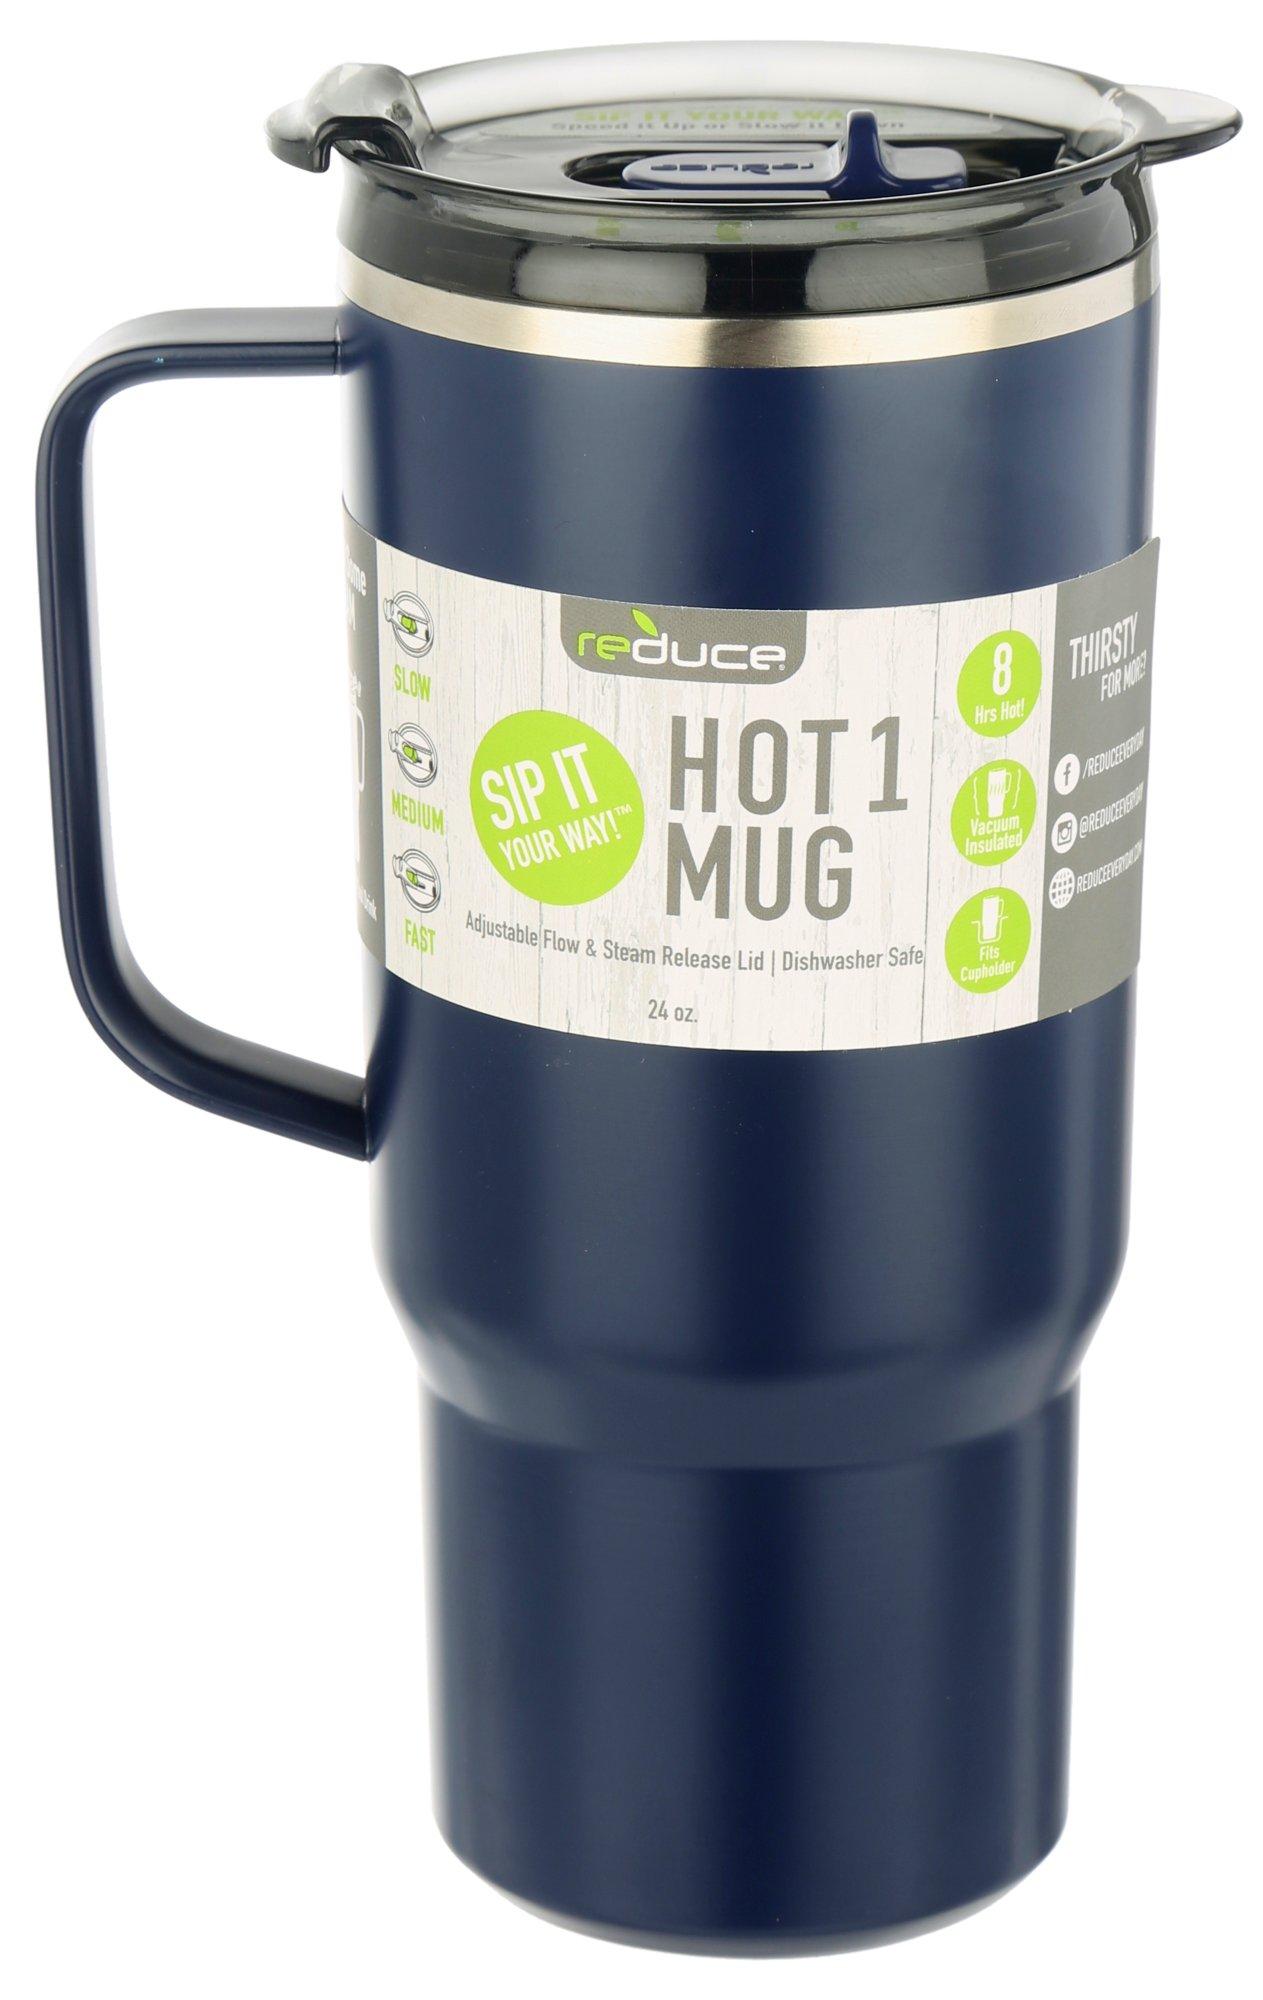 Reduce 24oz Hot Mug